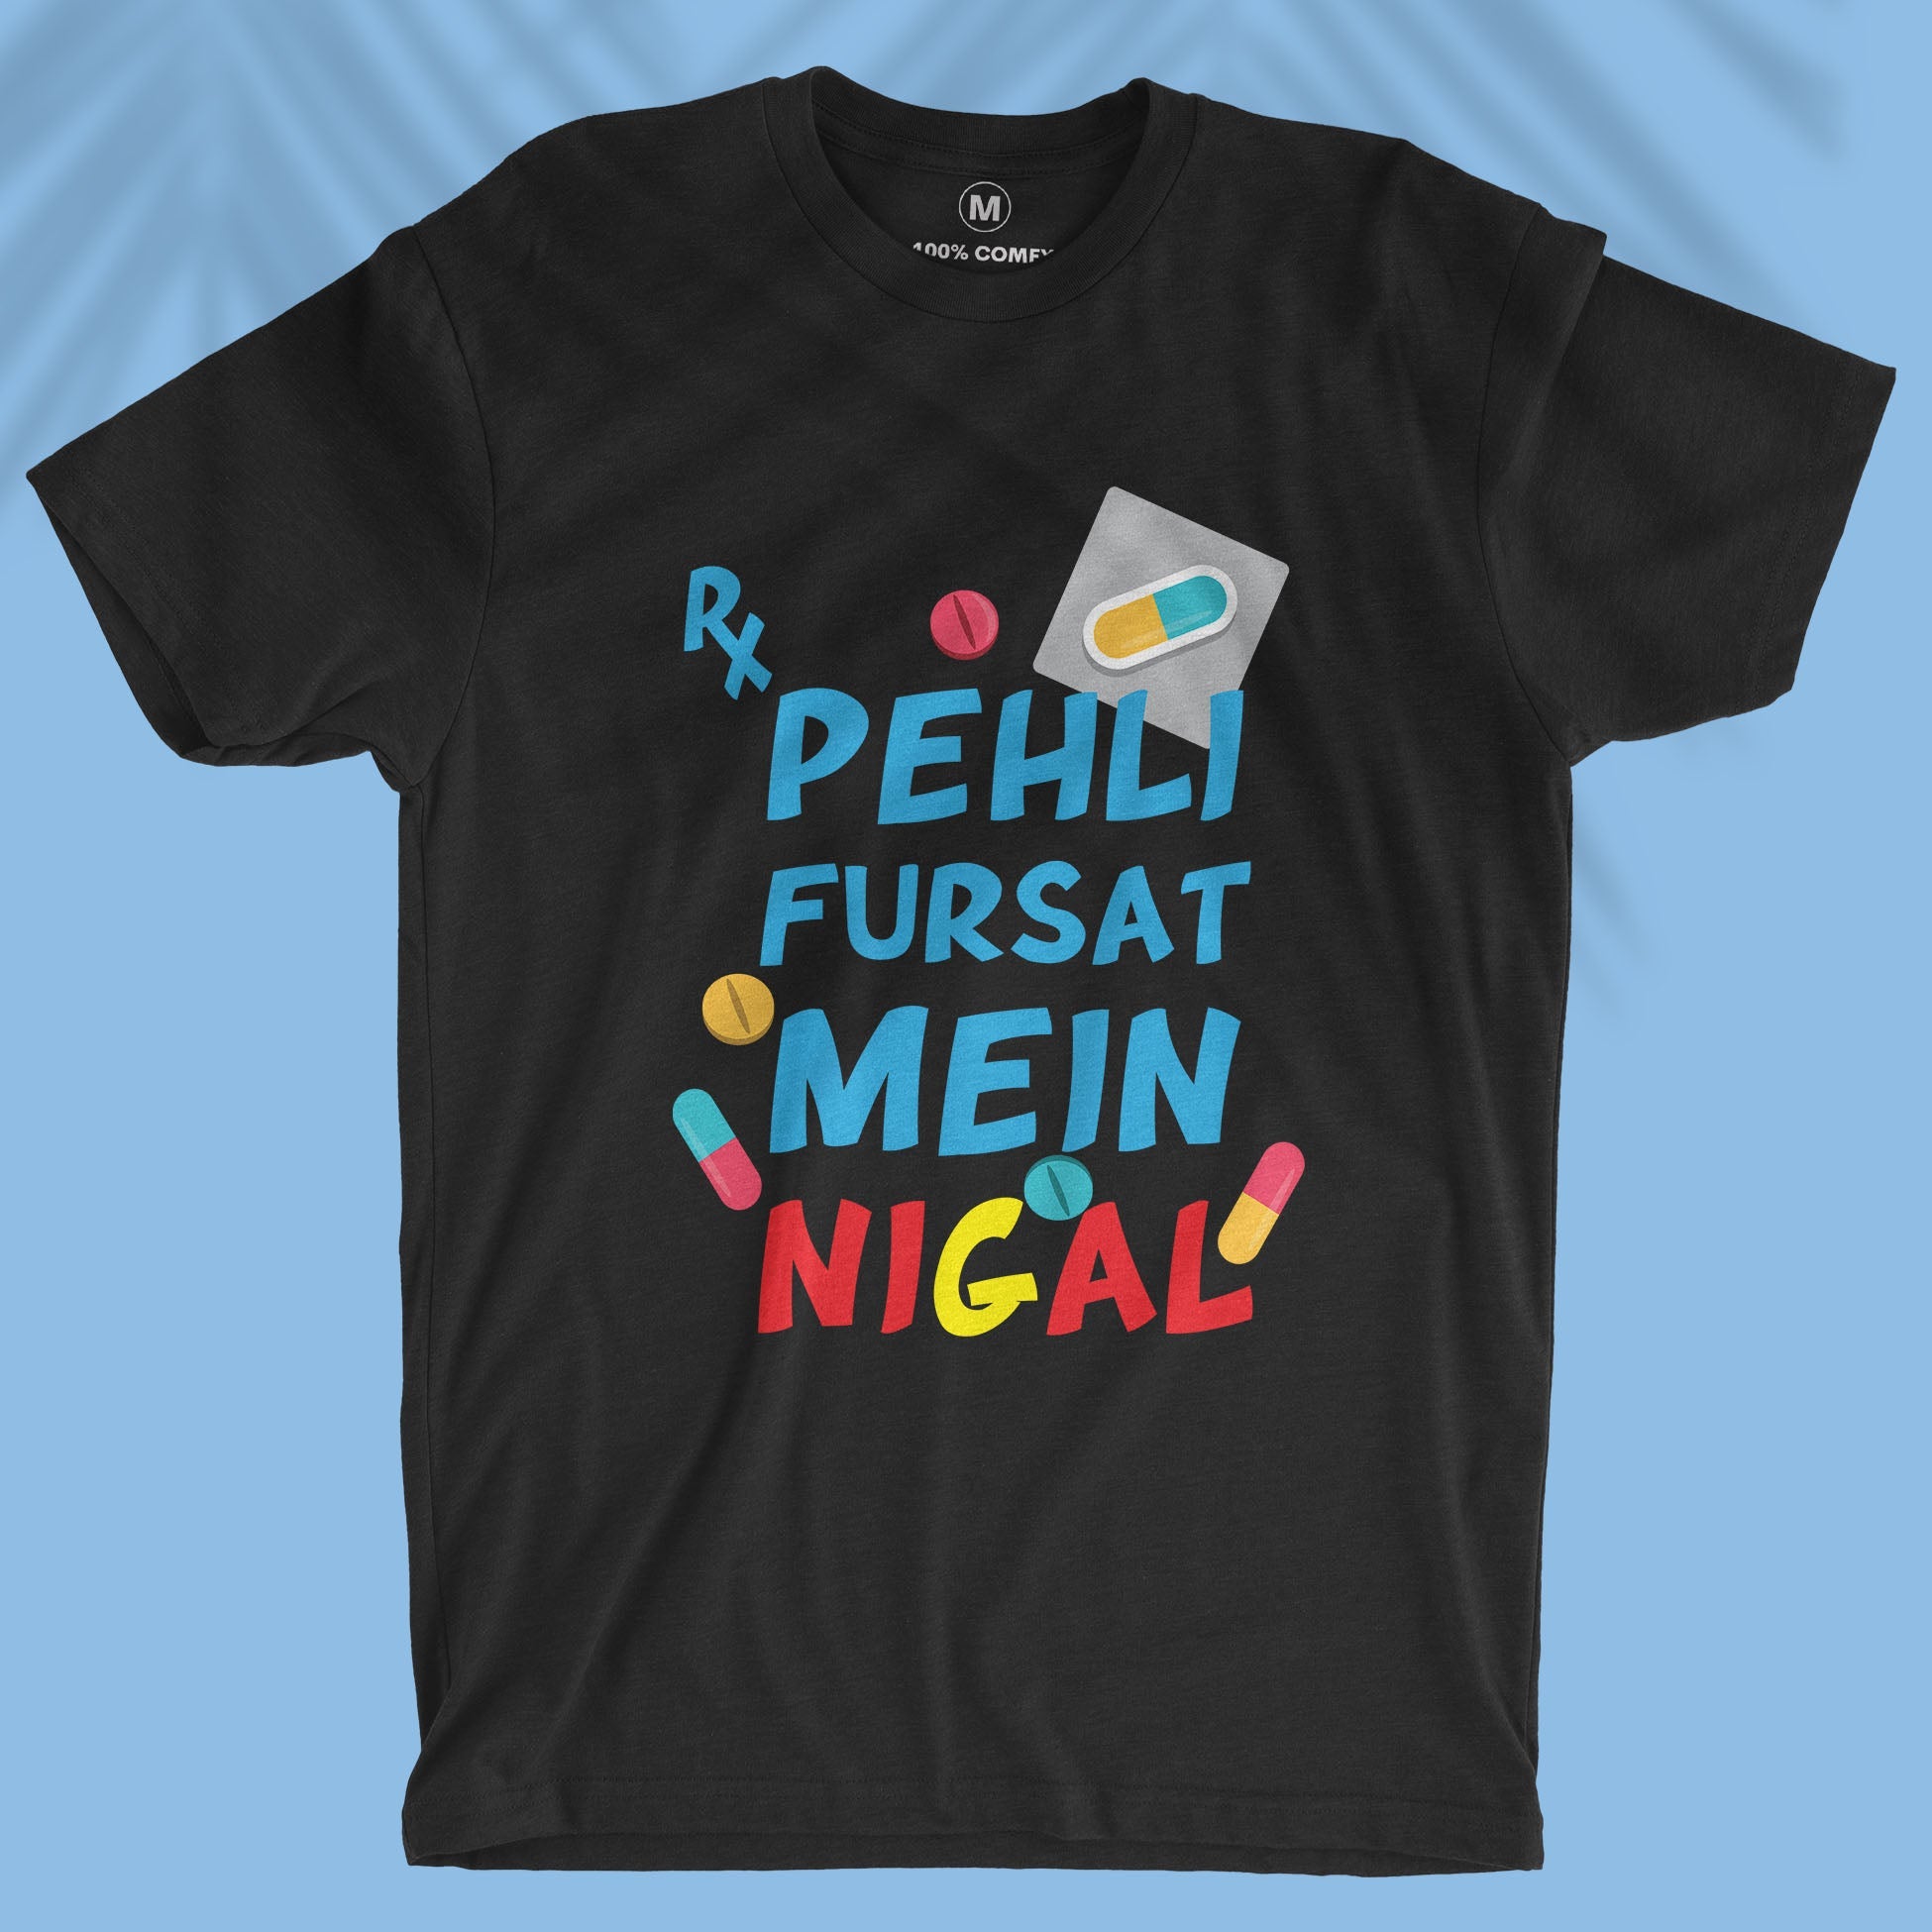 Pehli Fursat Mein Nigal - Men T-shirt